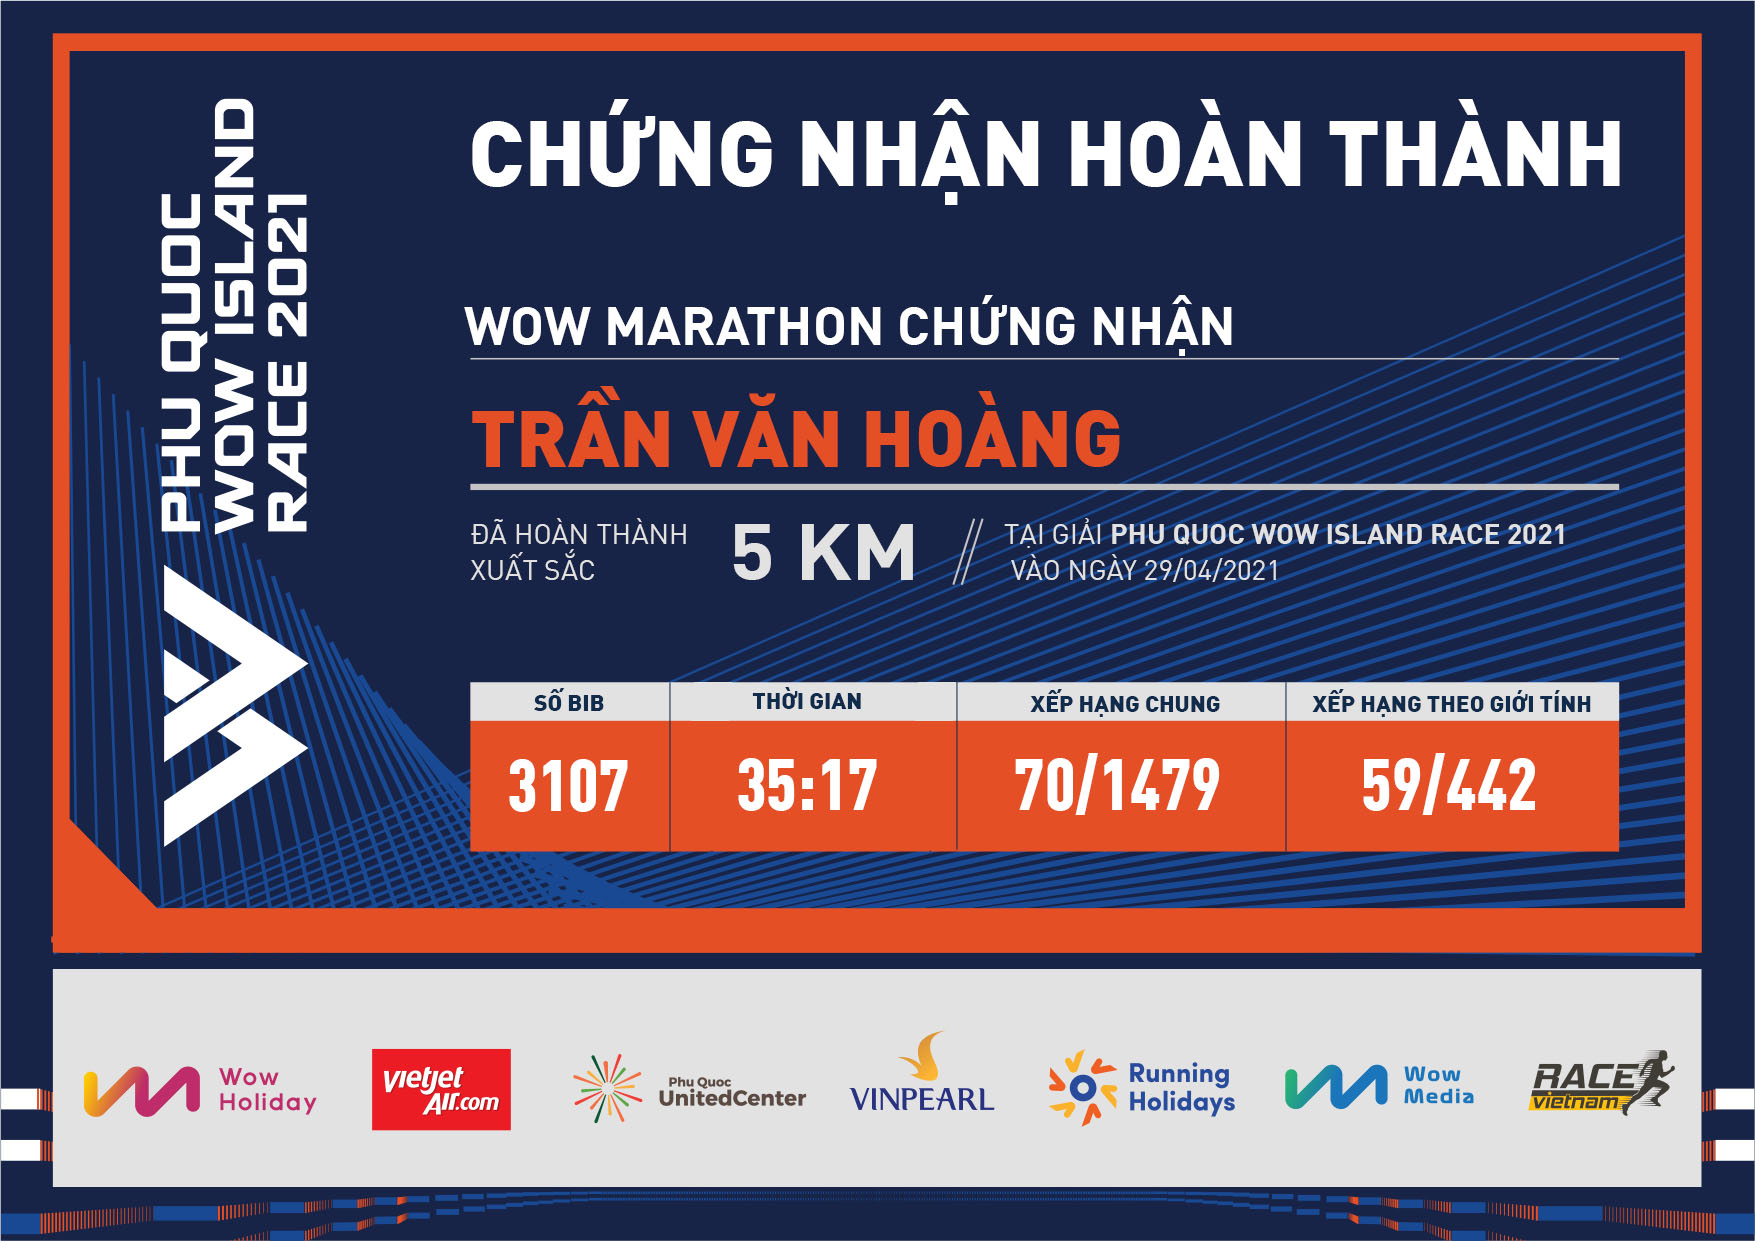 3107 - Trần Văn Hoàng